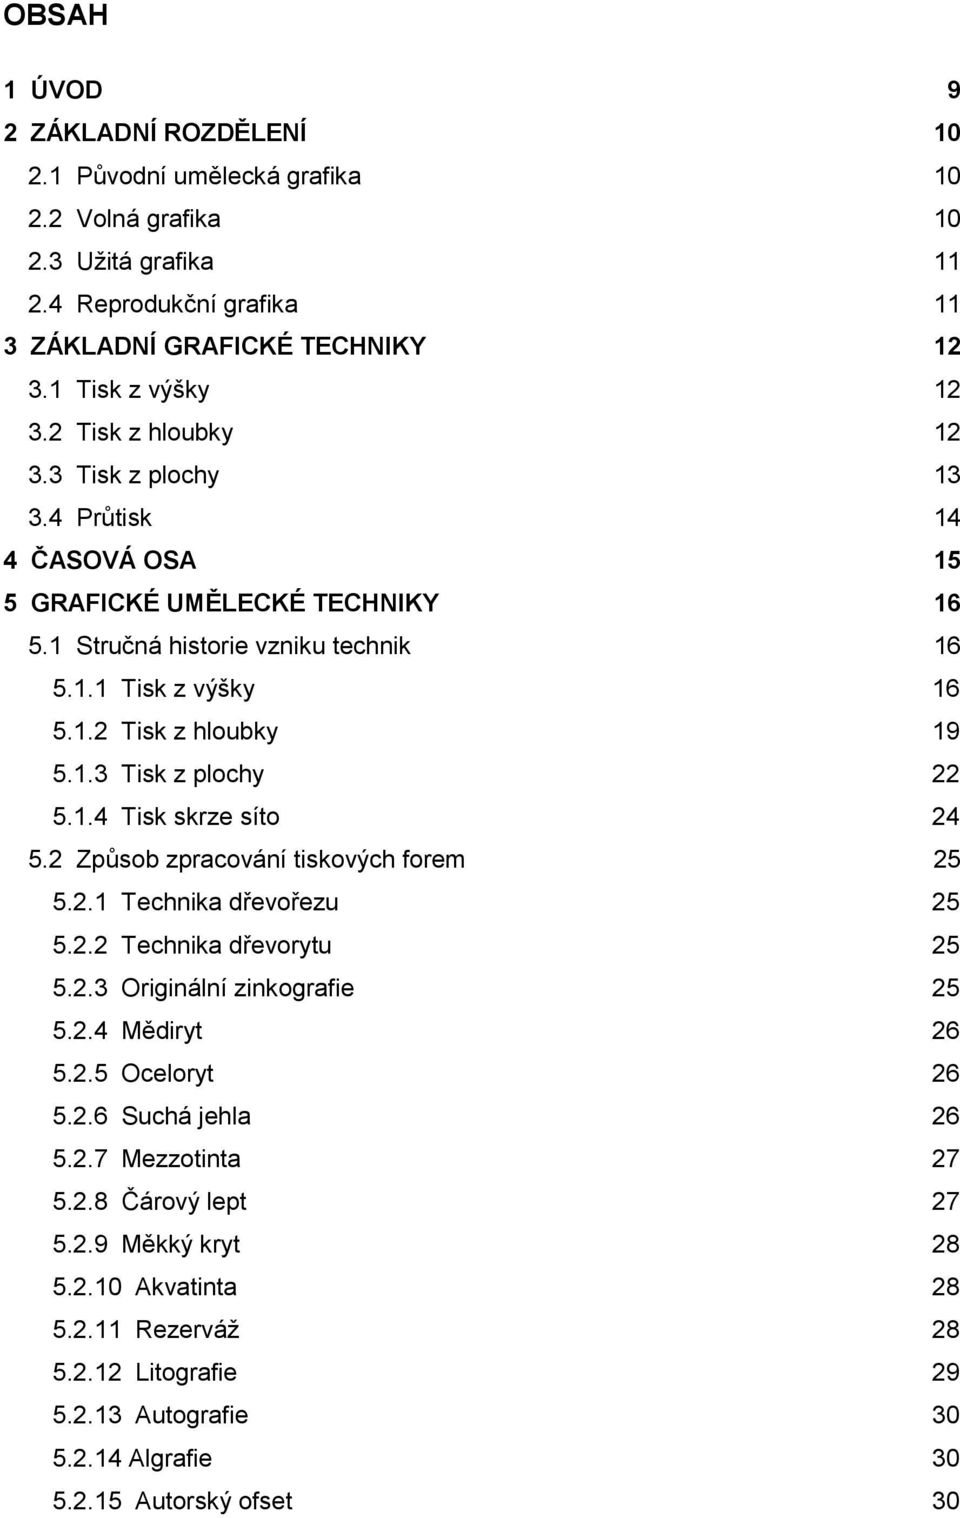 1.4 Tisk skrze síto 24 5.2 Způsob zpracování tiskových forem 25 5.2.1 Technika dřevořezu 25 5.2.2 Technika dřevorytu 25 5.2.3 Originální zinkografie 25 5.2.4 Mědiryt 26 5.2.5 Oceloryt 26 5.2.6 Suchá jehla 26 5.